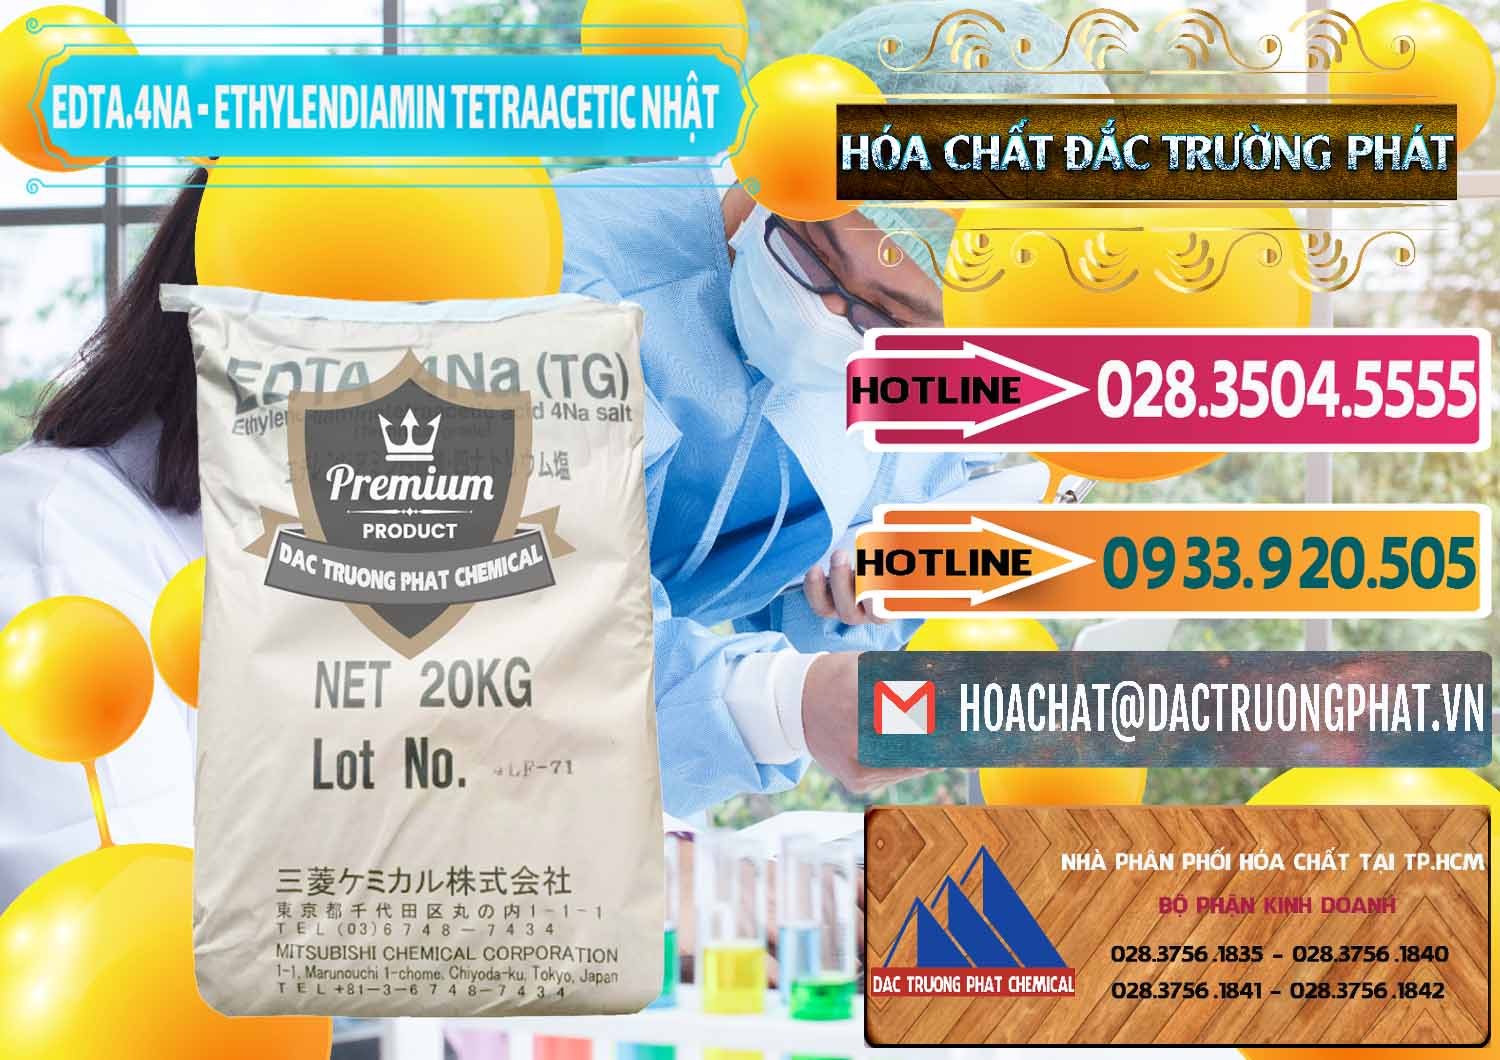 Nơi bán EDTA 4Na - Ethylendiamin Tetraacetic Nhật Bản Japan - 0482 - Nhà phân phối - nhập khẩu hóa chất tại TP.HCM - dactruongphat.vn